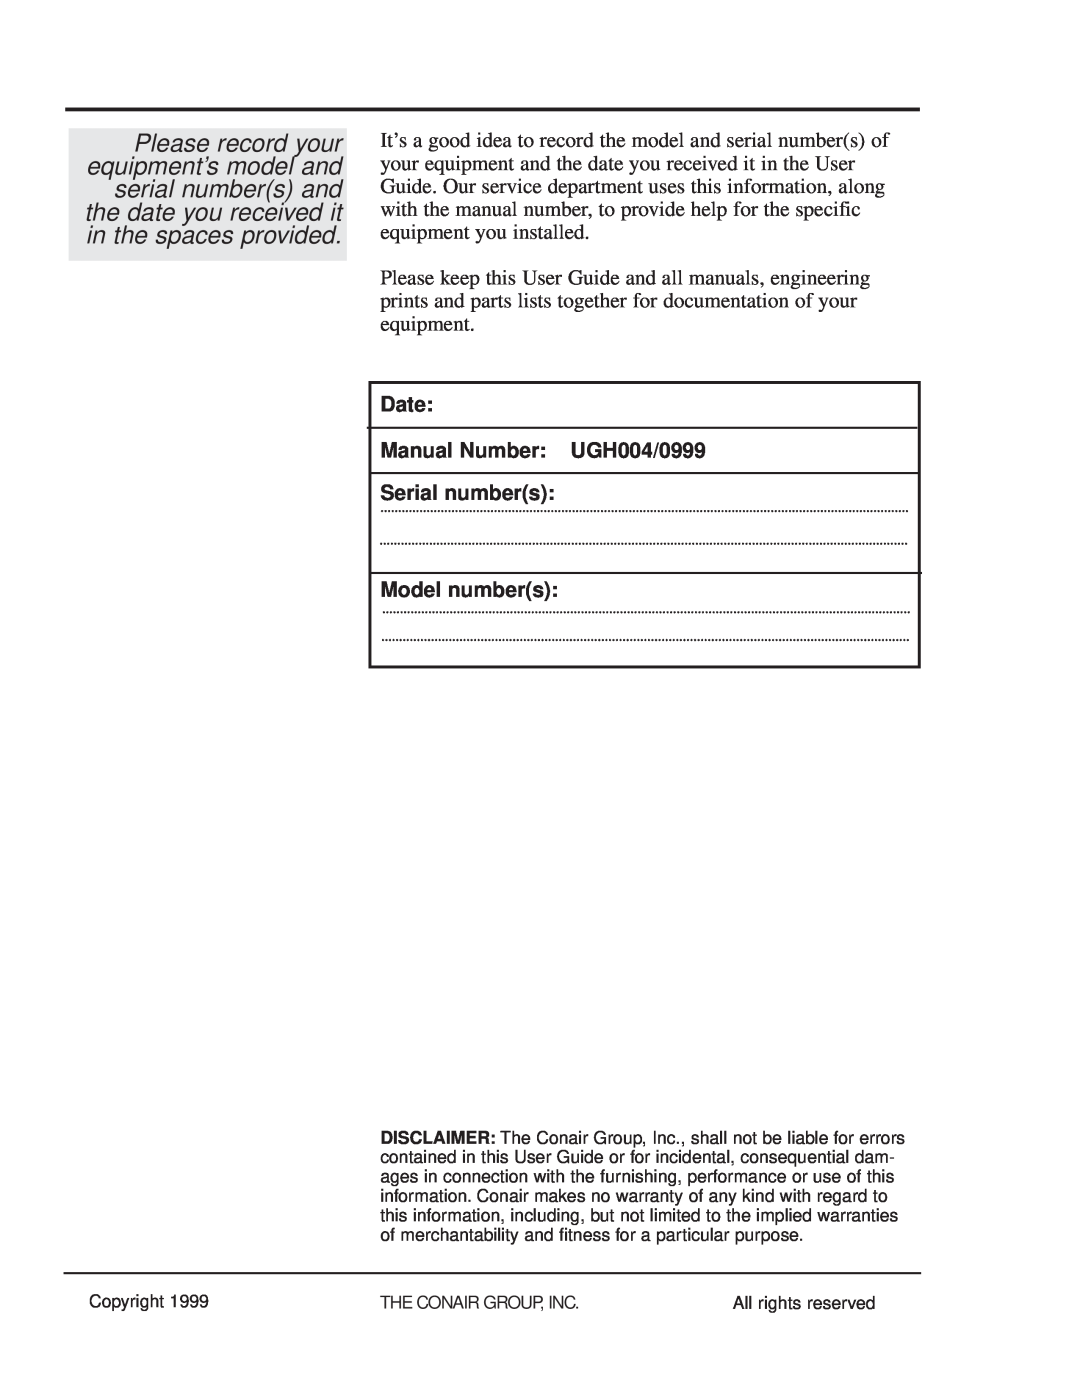 Conair MPA, MPW manual Date Manual Number UGH004/0999 Serial numbers Model numbers 